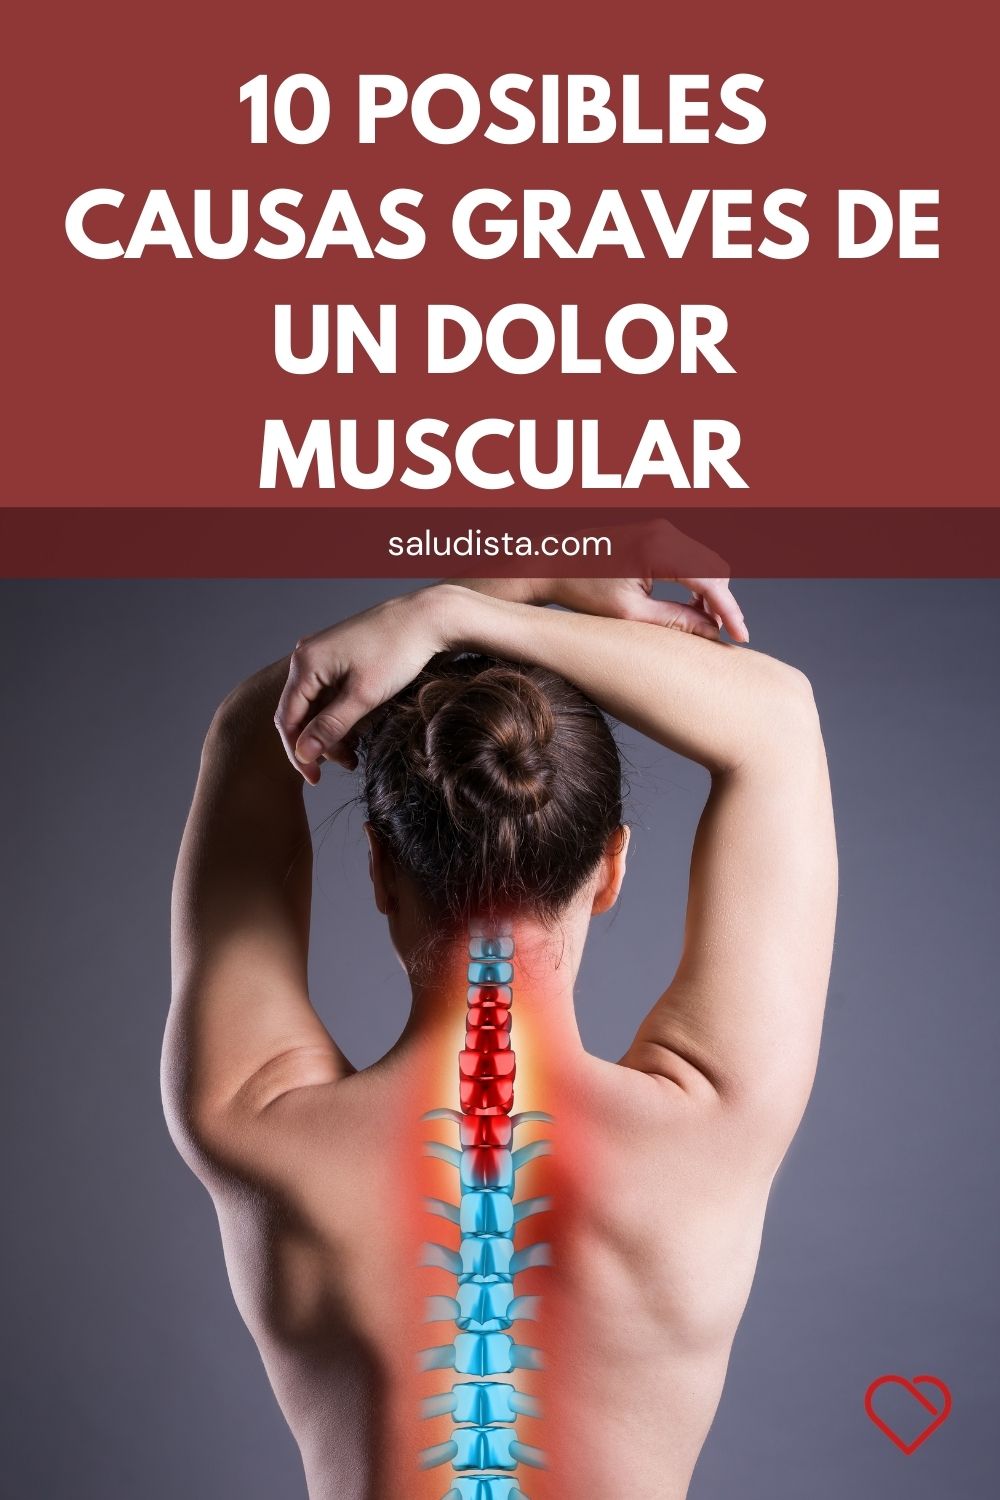 10 Posibles causas graves de un dolor muscular